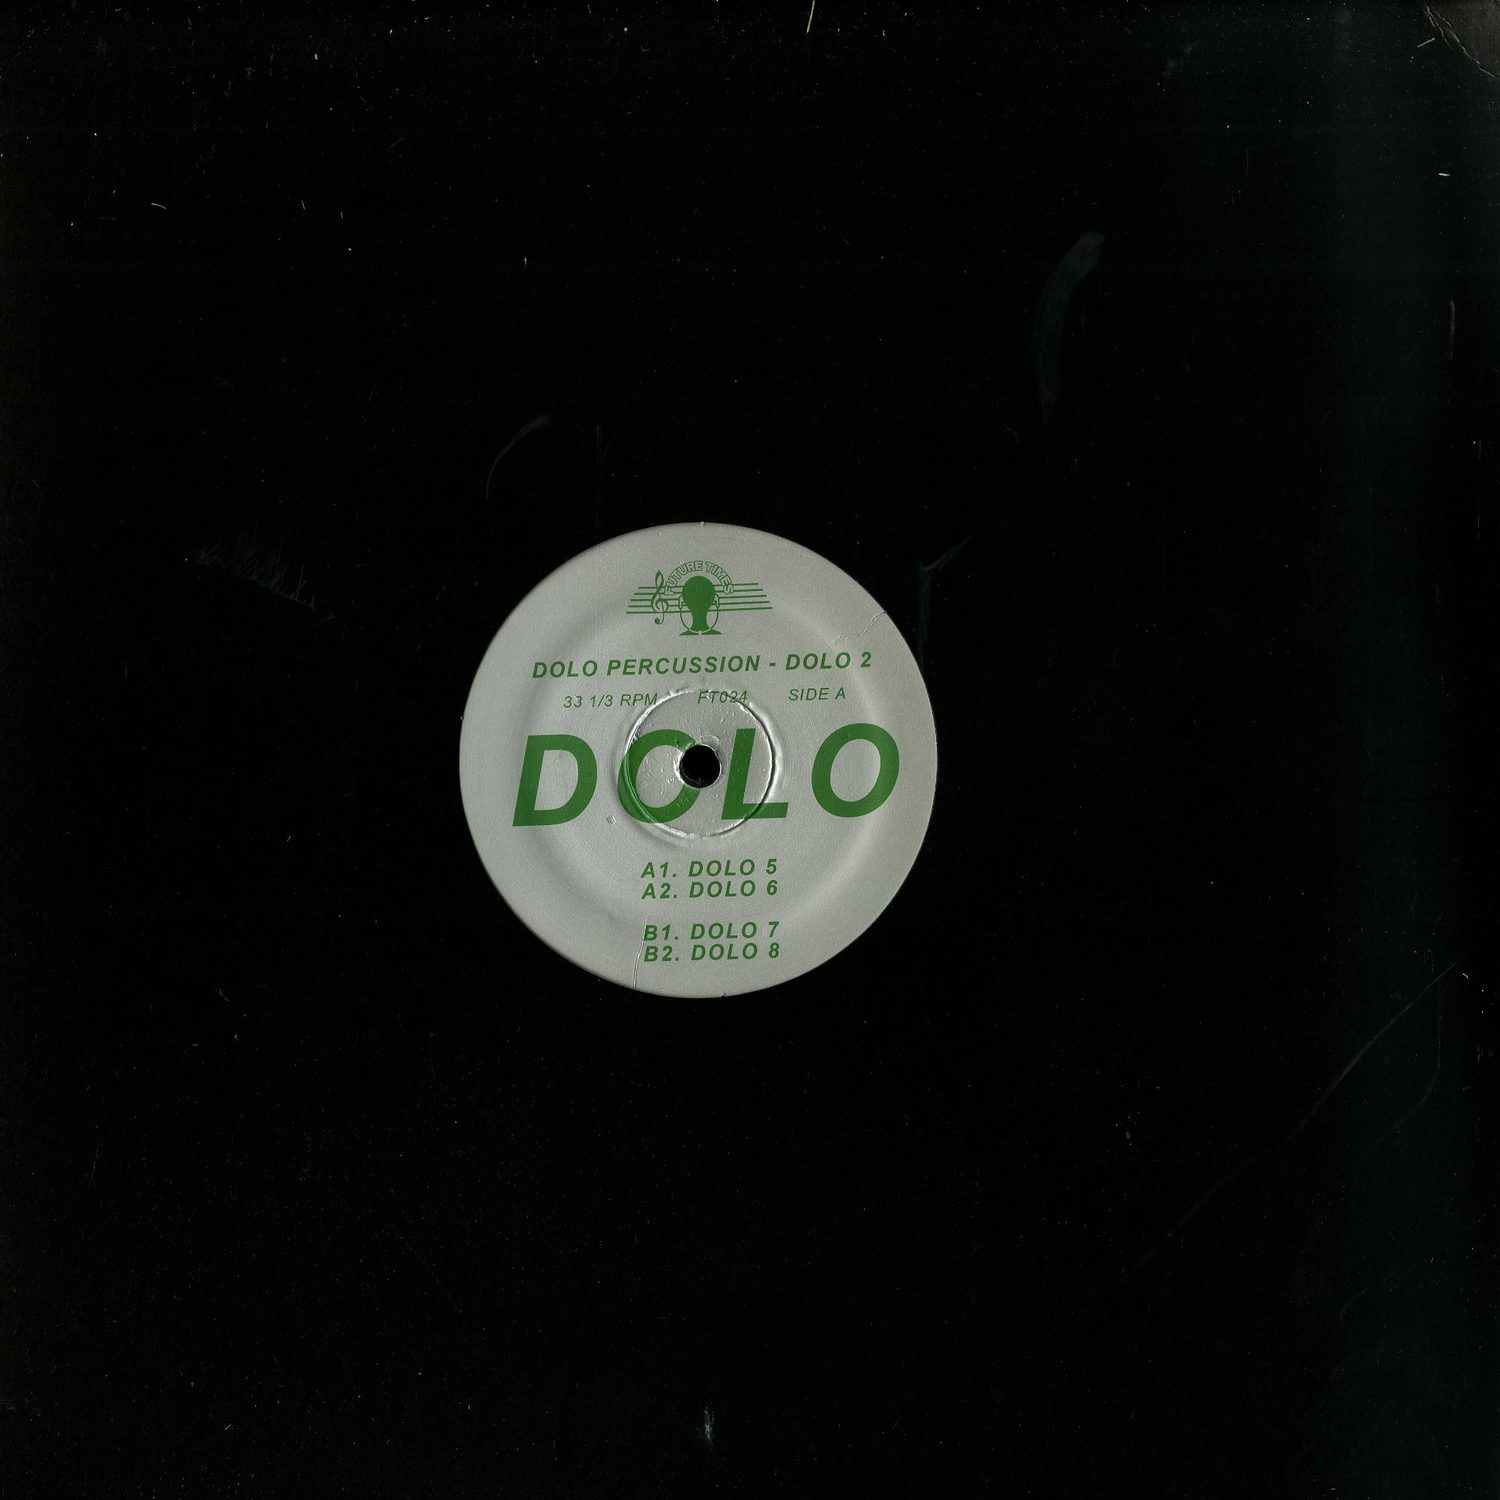 Dolo Percussion - DOLO 2 EP